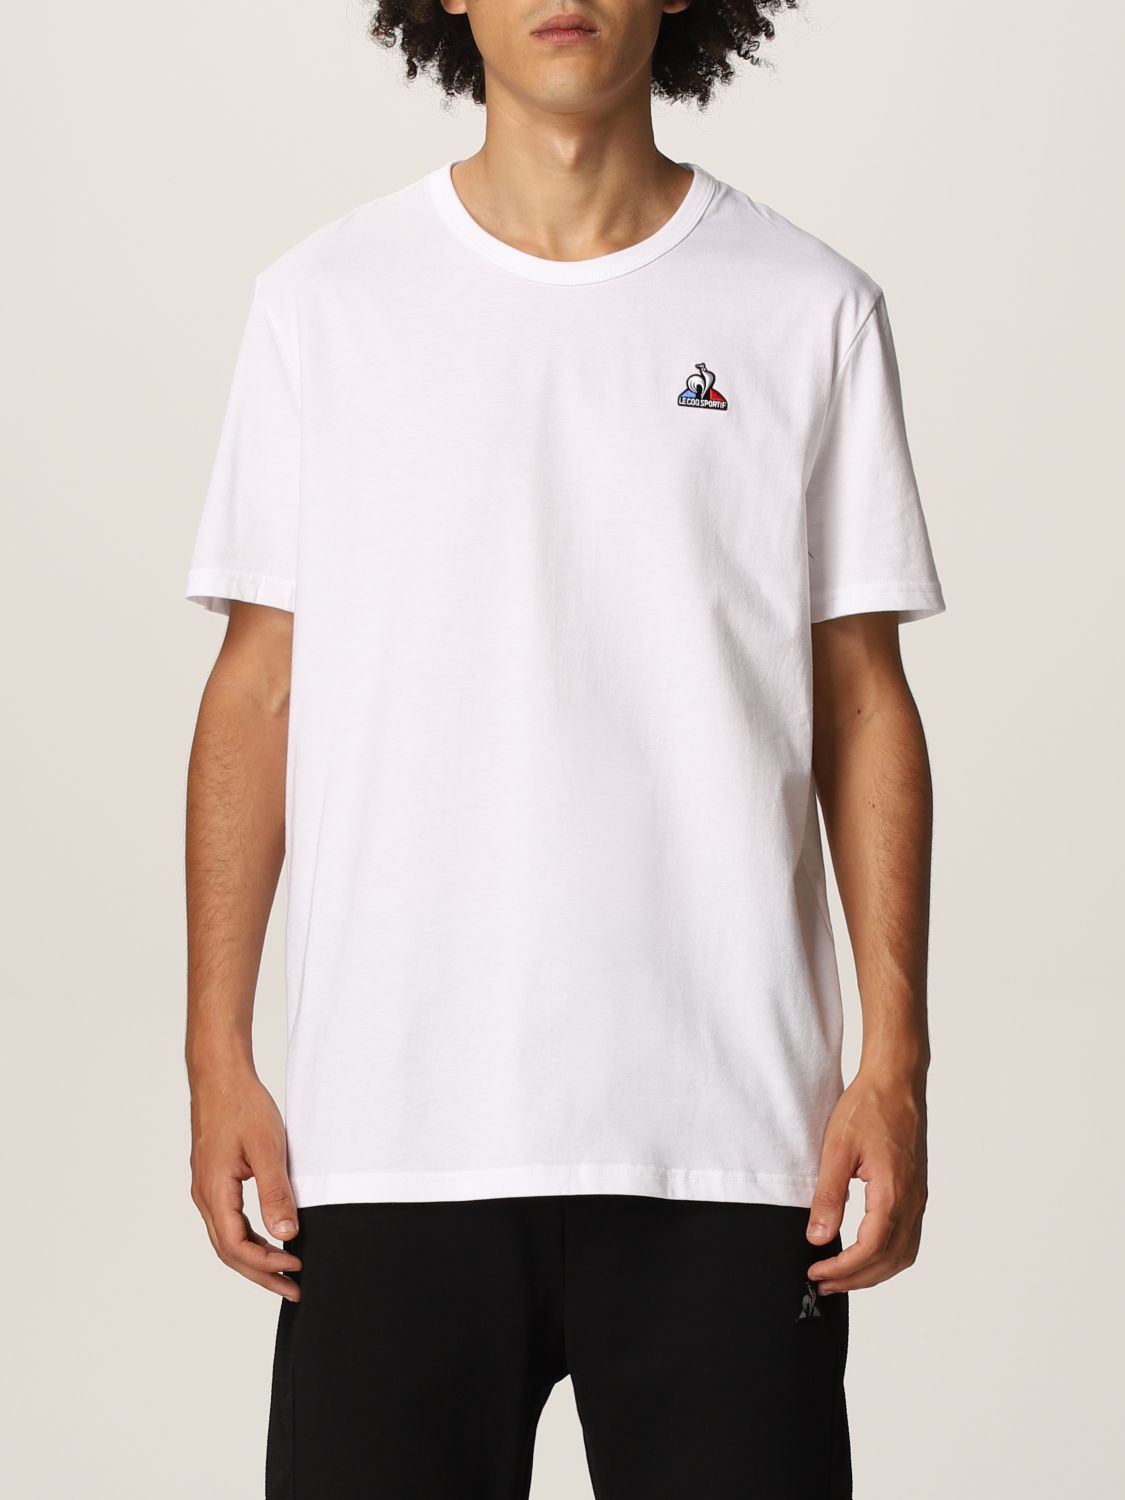 LE COQ SPORTIF: t-shirt for man - White | Le Coq Sportif t-shirt ...